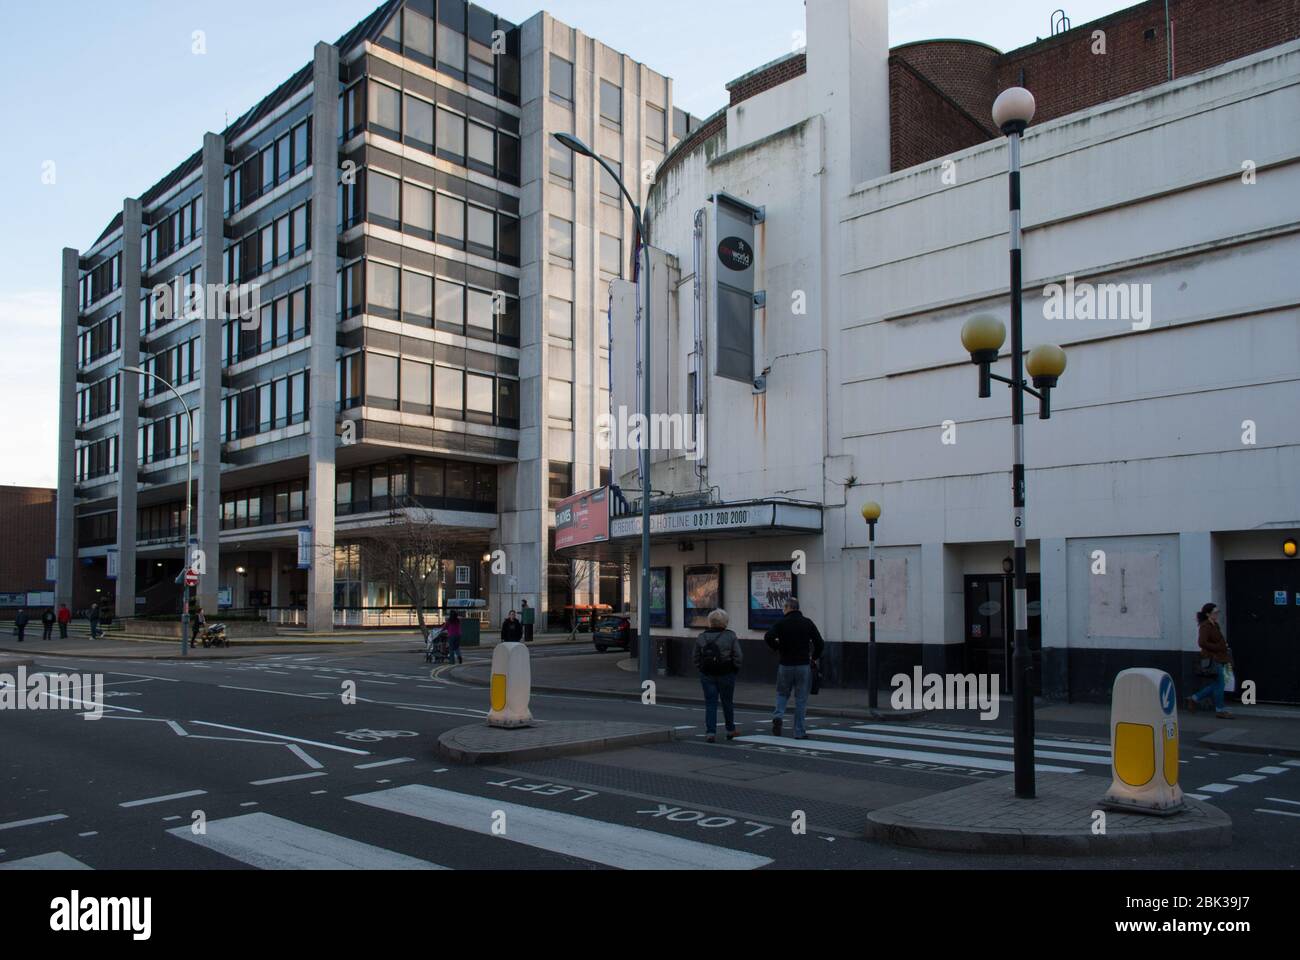 Hammersmith Town Hall Extension Elevation ehemaliges Regal Cinema Cineworld ABC 207 King Street, London, W6 assoziierte britische Kinos William R. Glen Stockfoto